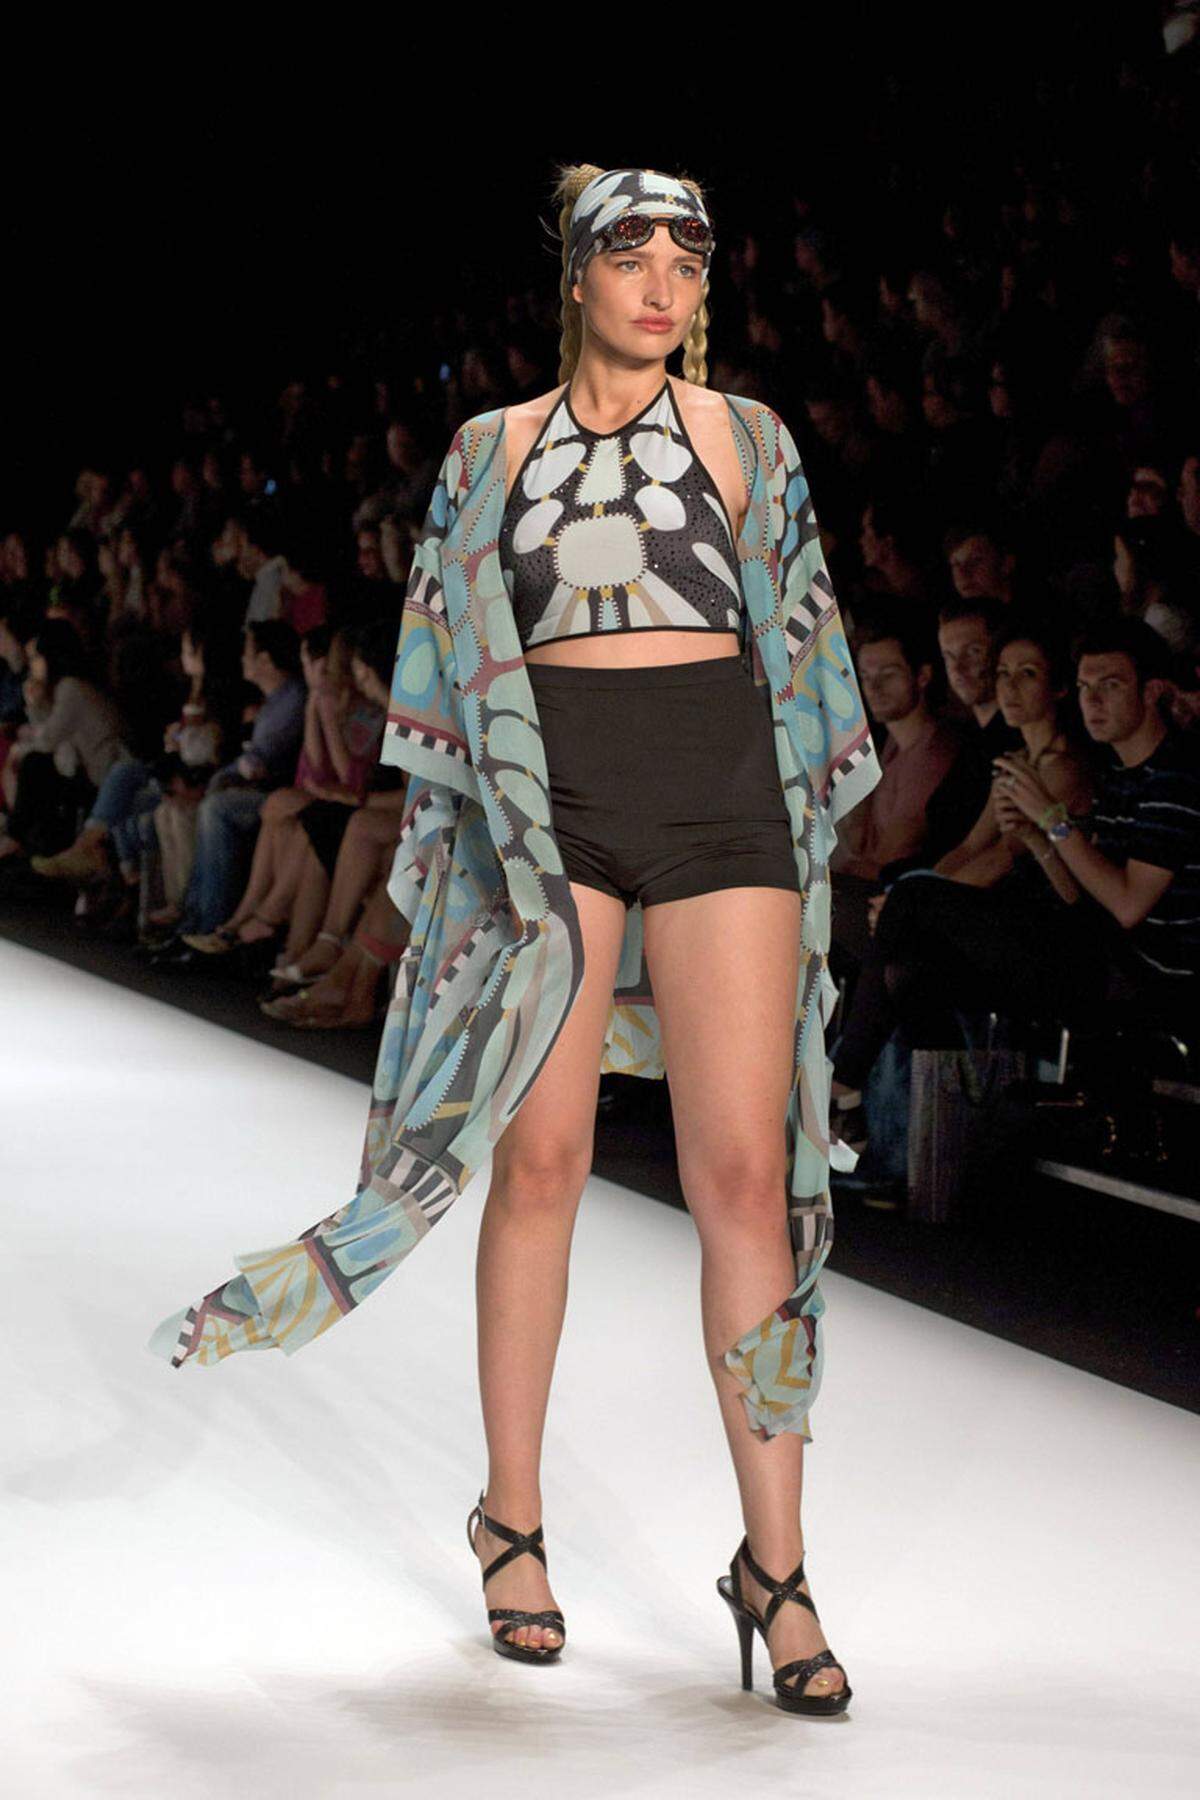 Bei der Fashion Week in Berlin 2013 lief Sarina Nowak noch nicht als Plus-Size-Model über den Laufsteg.